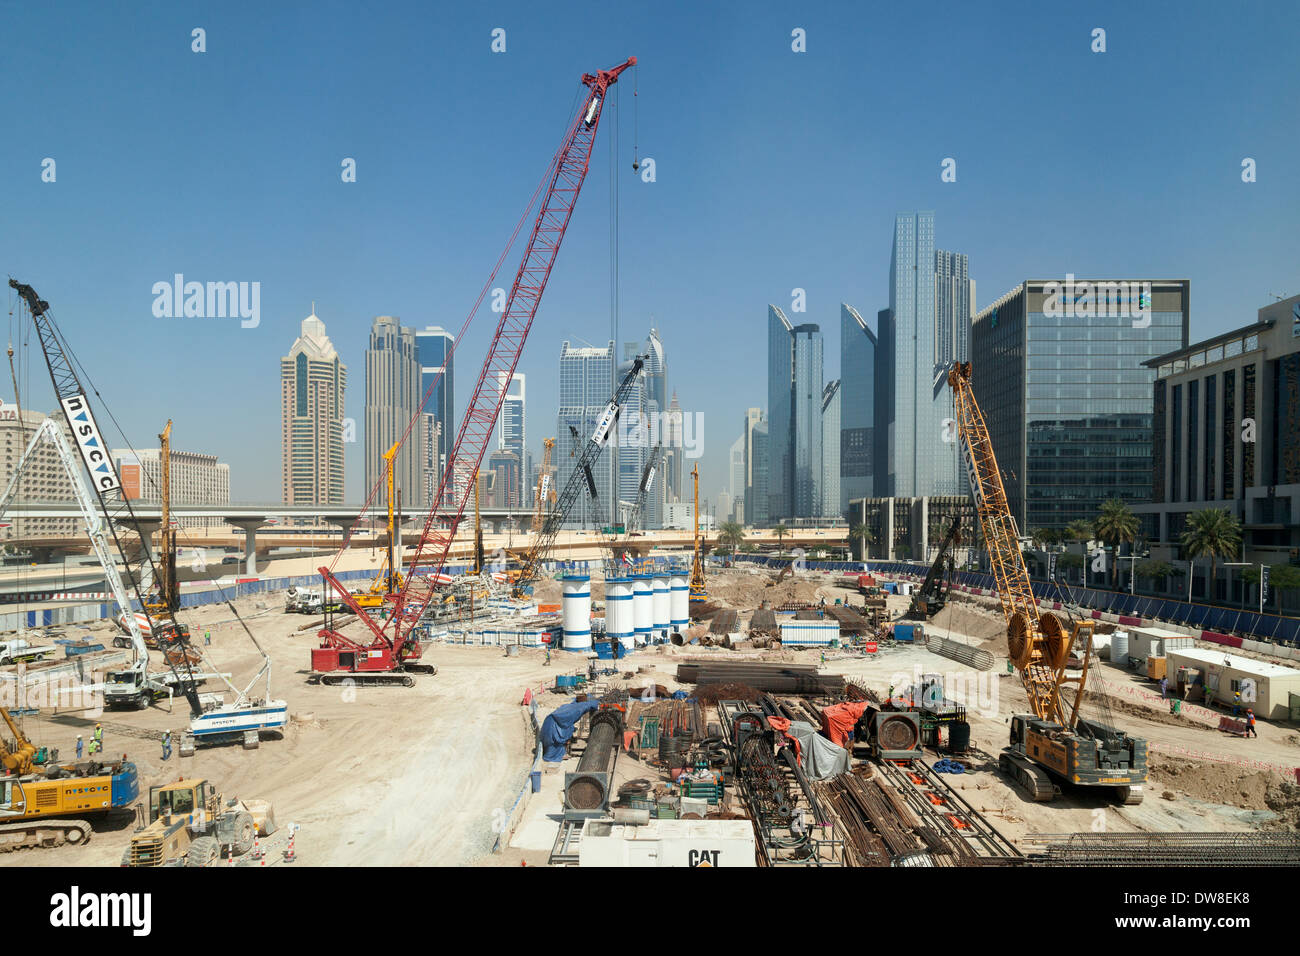 Construction on a building site near the Dubai Mall, Dubai, UAE, United Arab Emirates Middle East Stock Photo